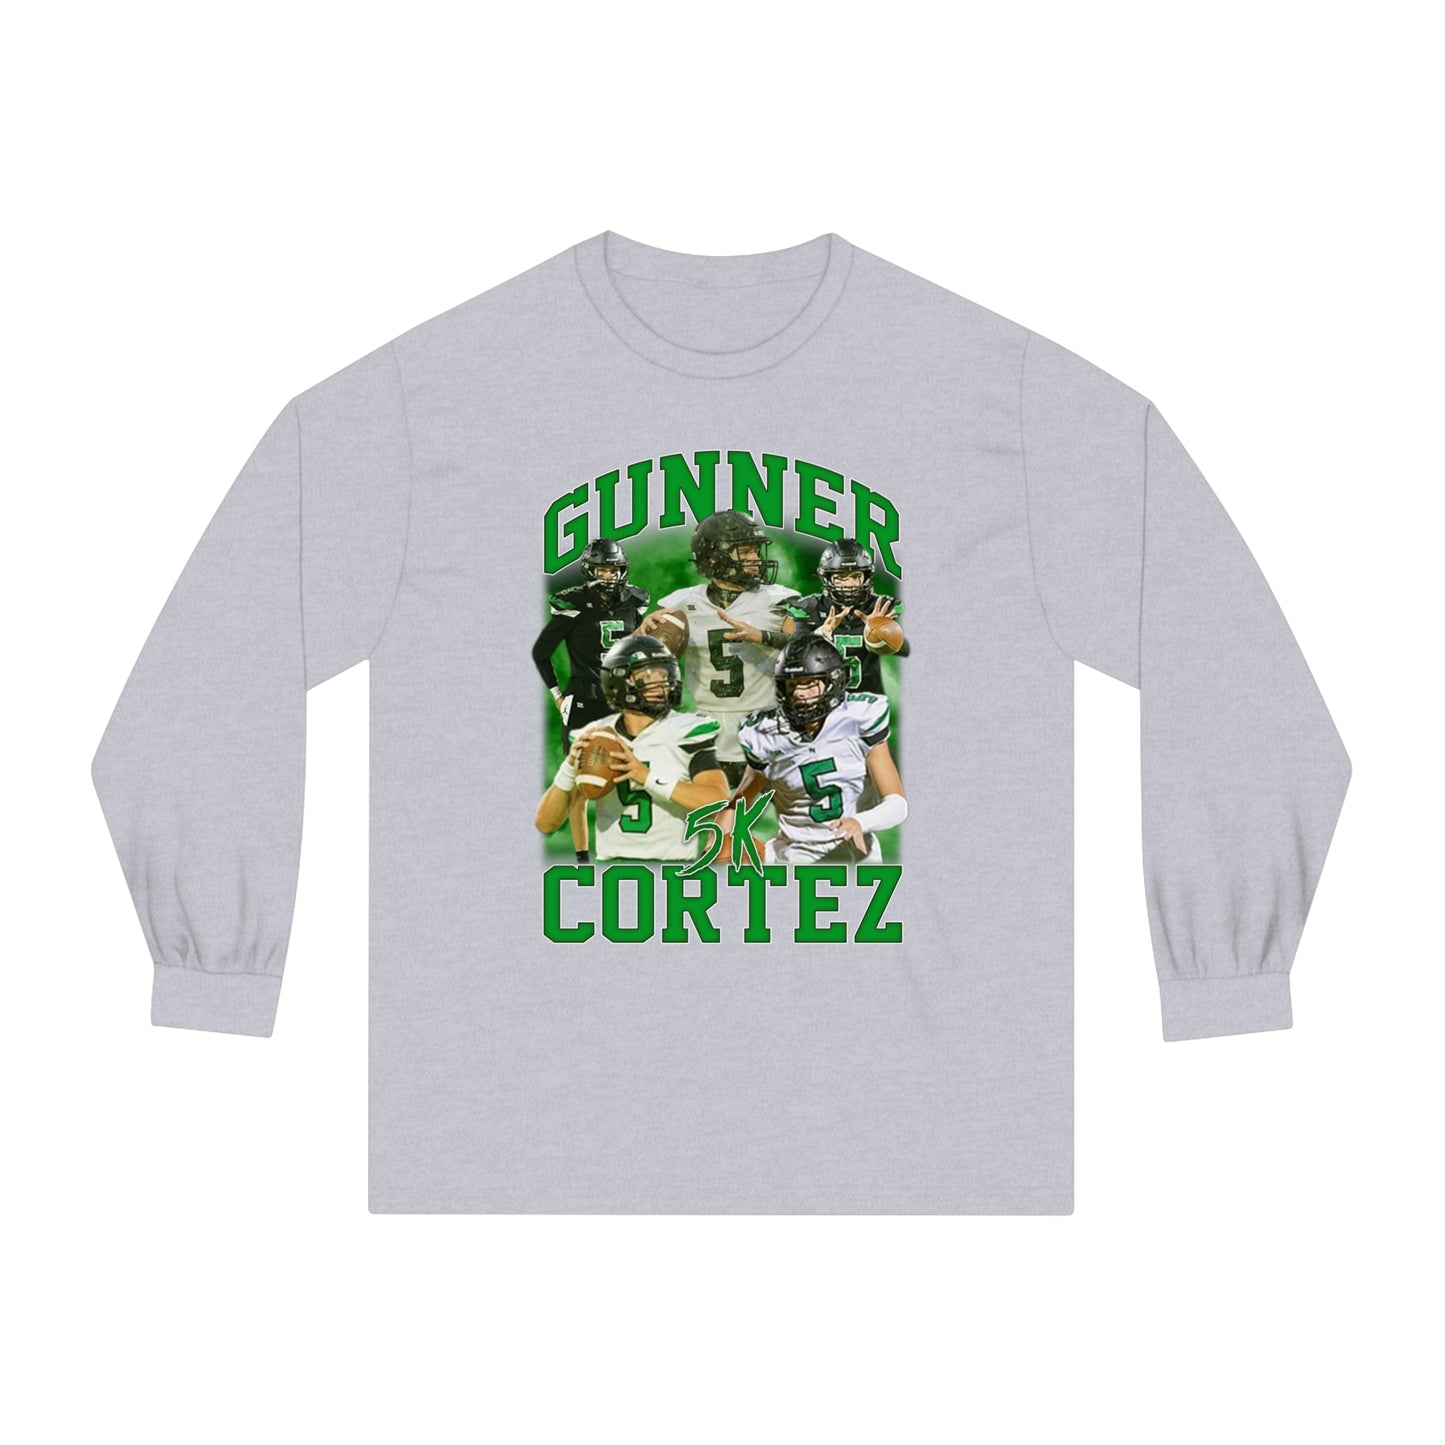 Gunner Cortez Classic Long Sleeve T-Shirt